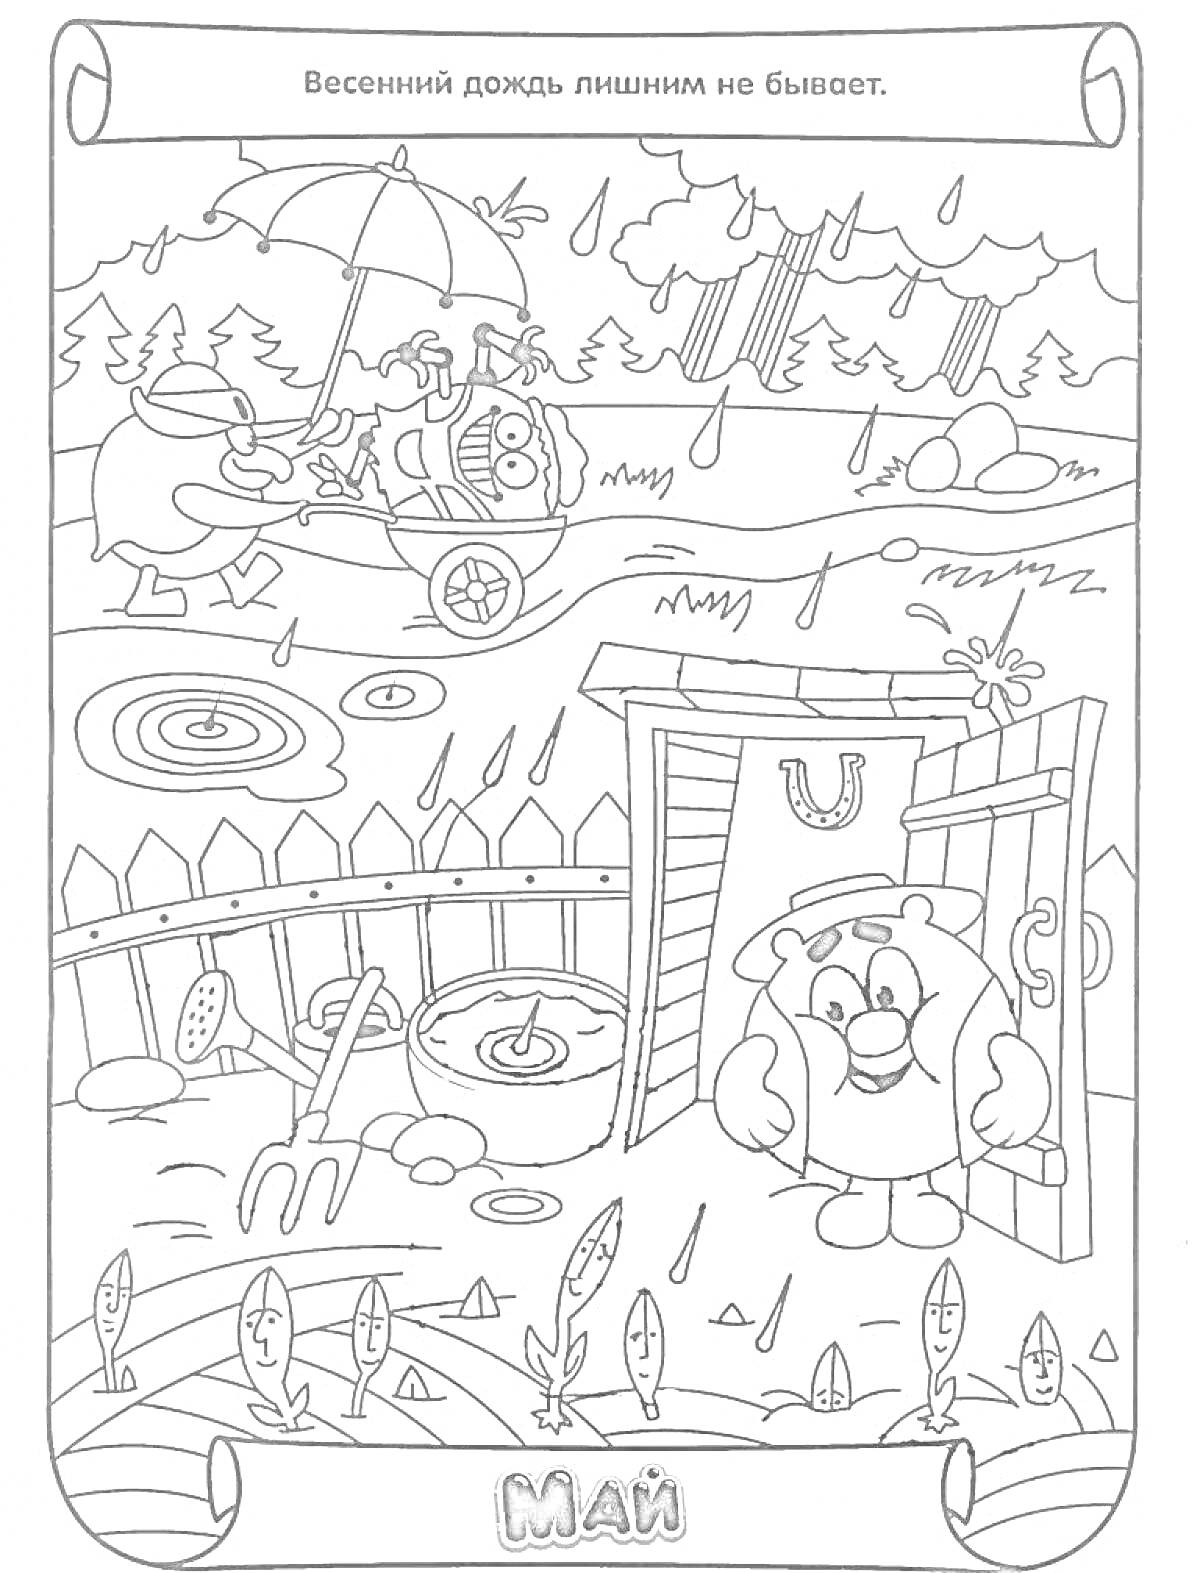 РаскраскаРаскраска - Май: Весенний дождь с персонажами, поливающими растения и сидящими под зонтом